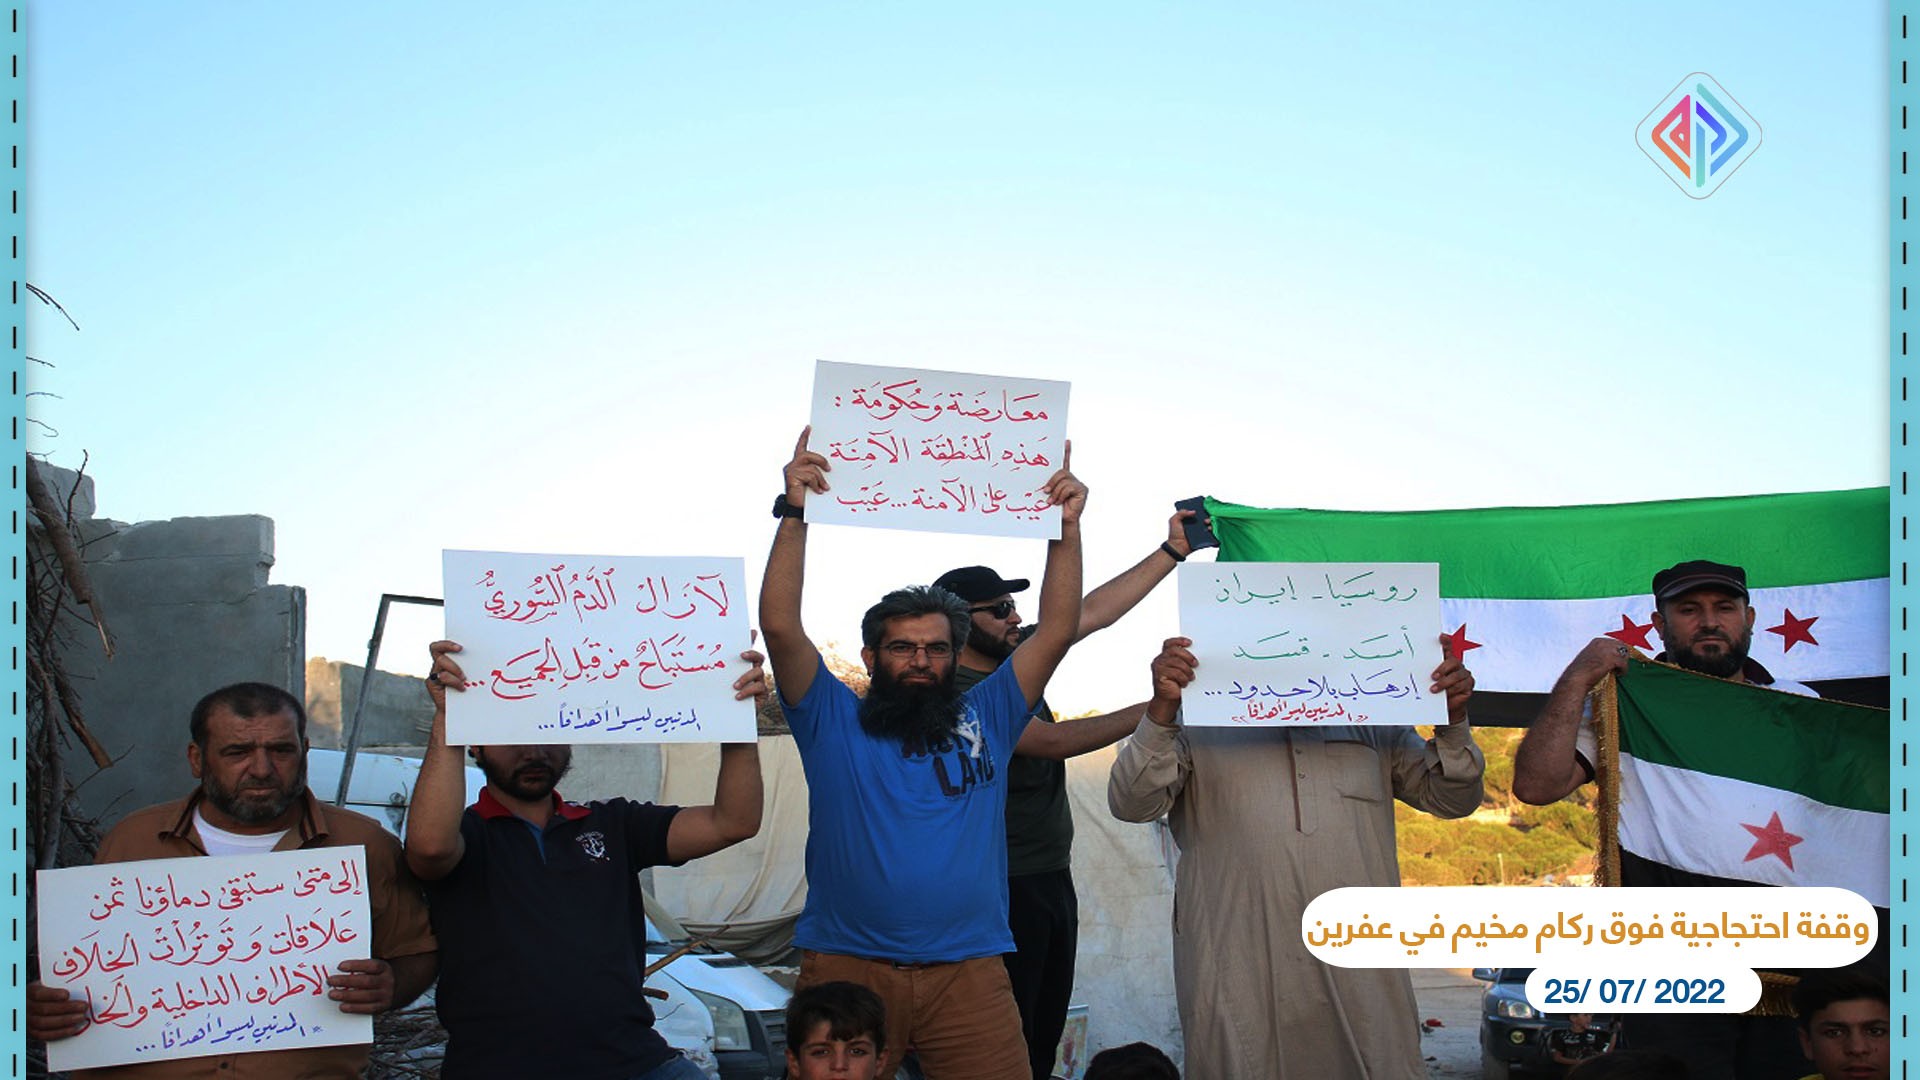 وقفة احتجاجية فوق ركام 2 مخيم في عفرين عدسة أمين العلي آرام 25 تموز 2022.jpg